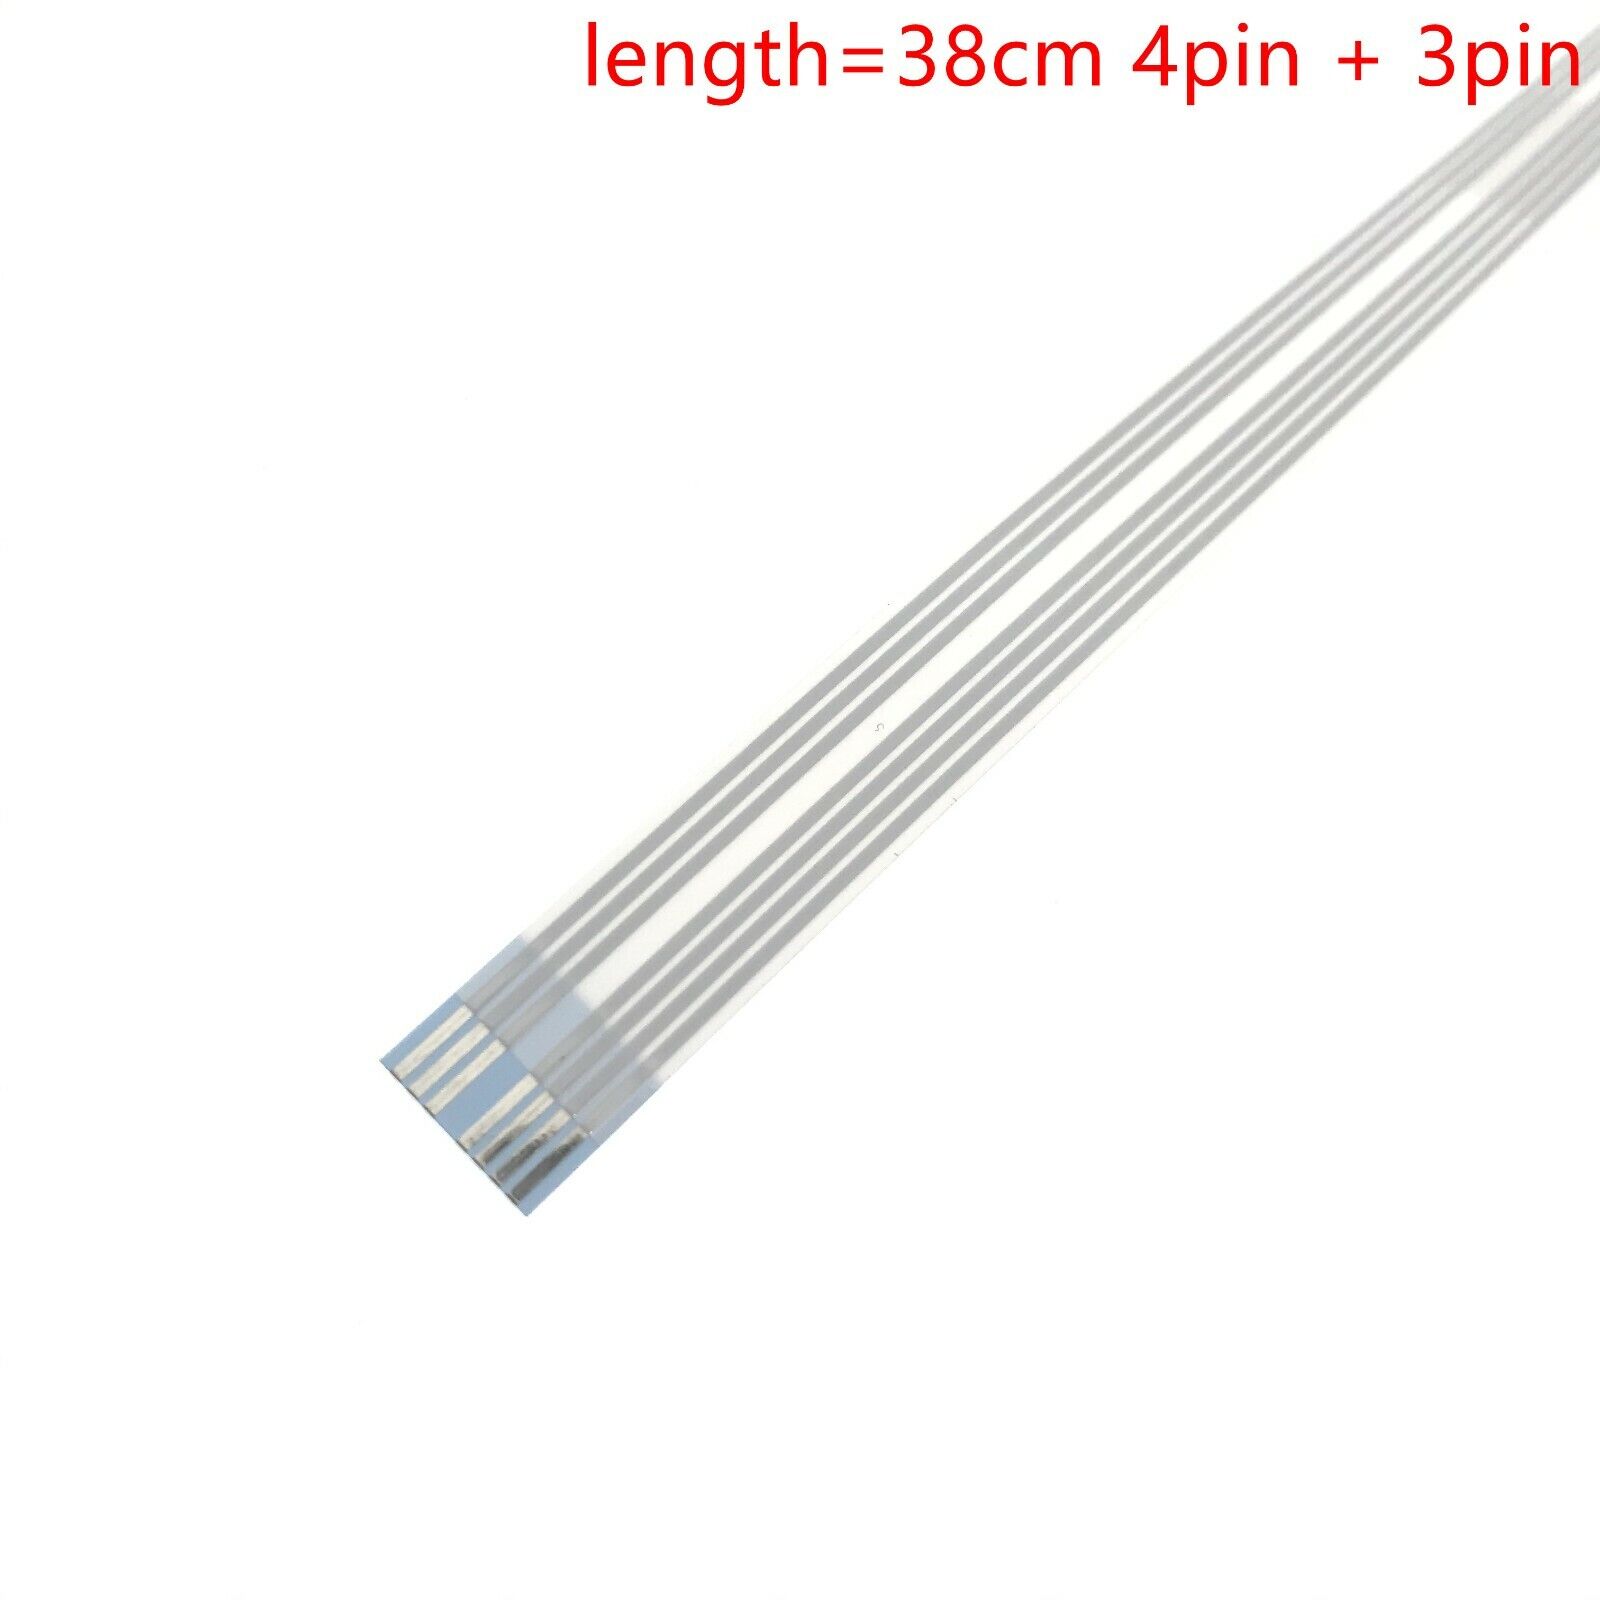 10PCX Carriage Sensor Cable for Epson L4168 L4169 L5190 L6168 L6178 L6198 ET2710 Unbranded Does Not Apply - фотография #5